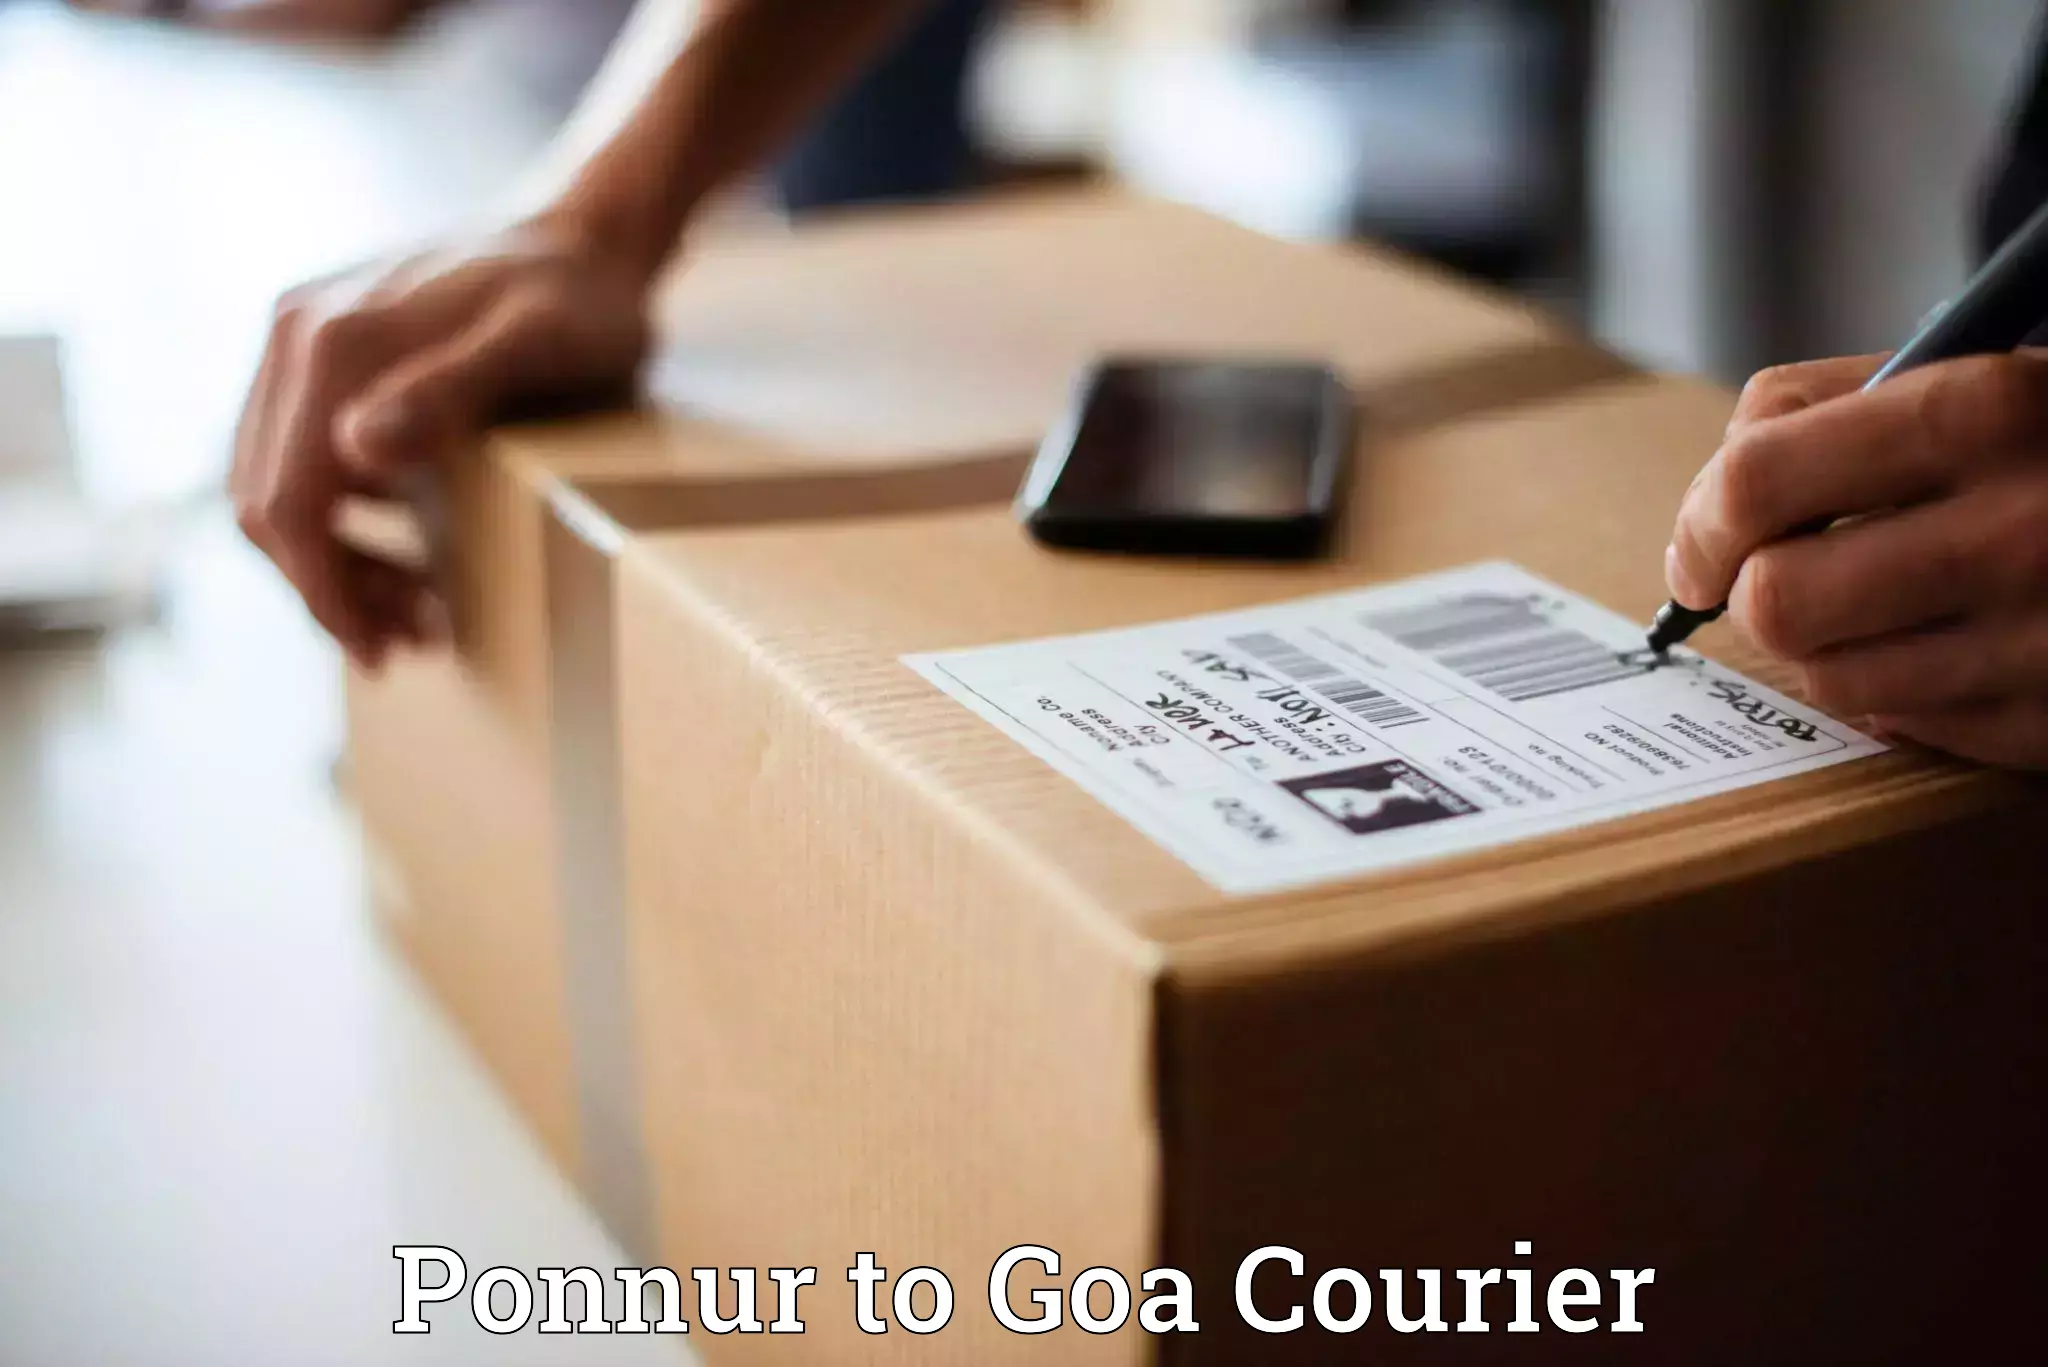 Digital courier platforms Ponnur to Vasco da Gama